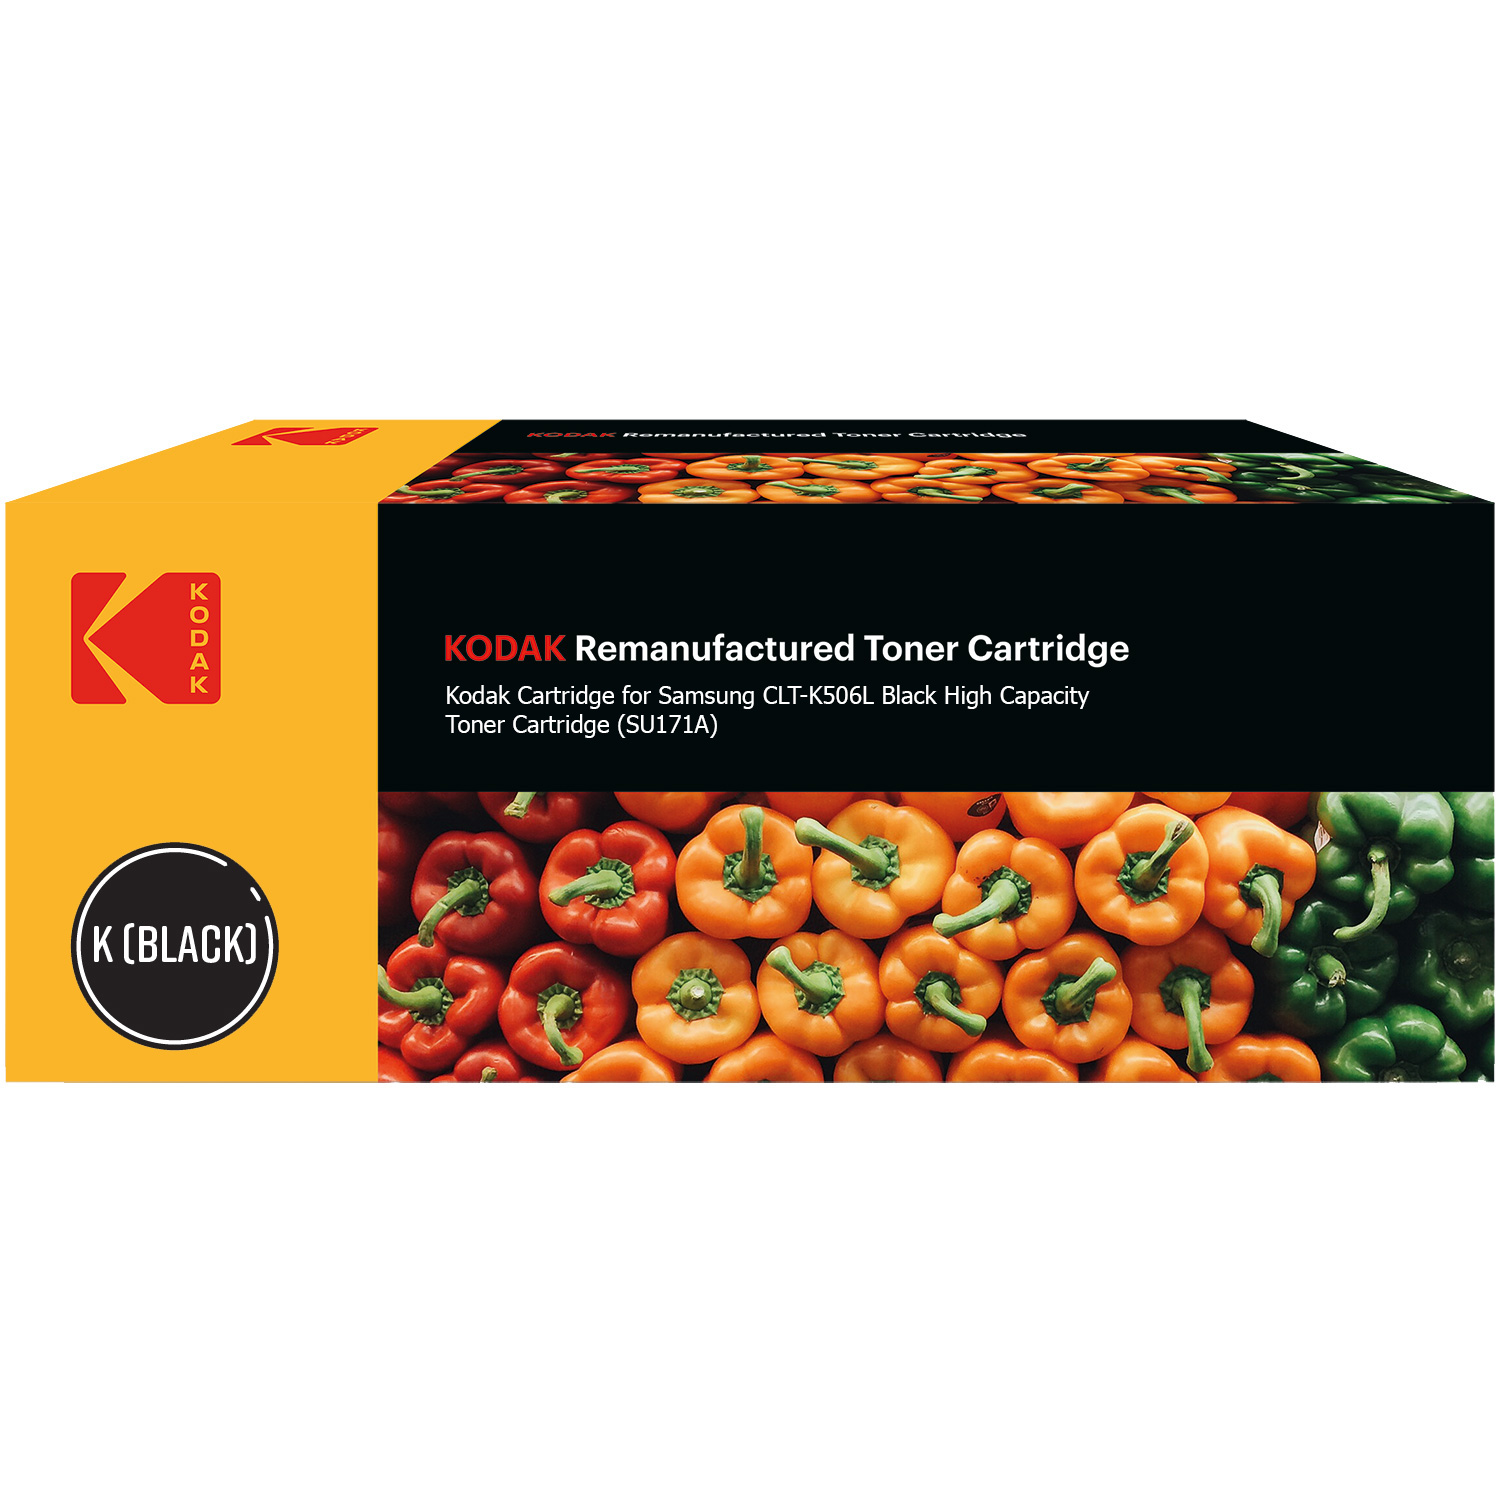 Kodak Ultimate Samsung CLT-K506L Black High Capacity Toner Cartridge (SU171A) (Kodak KODCLTK506L)